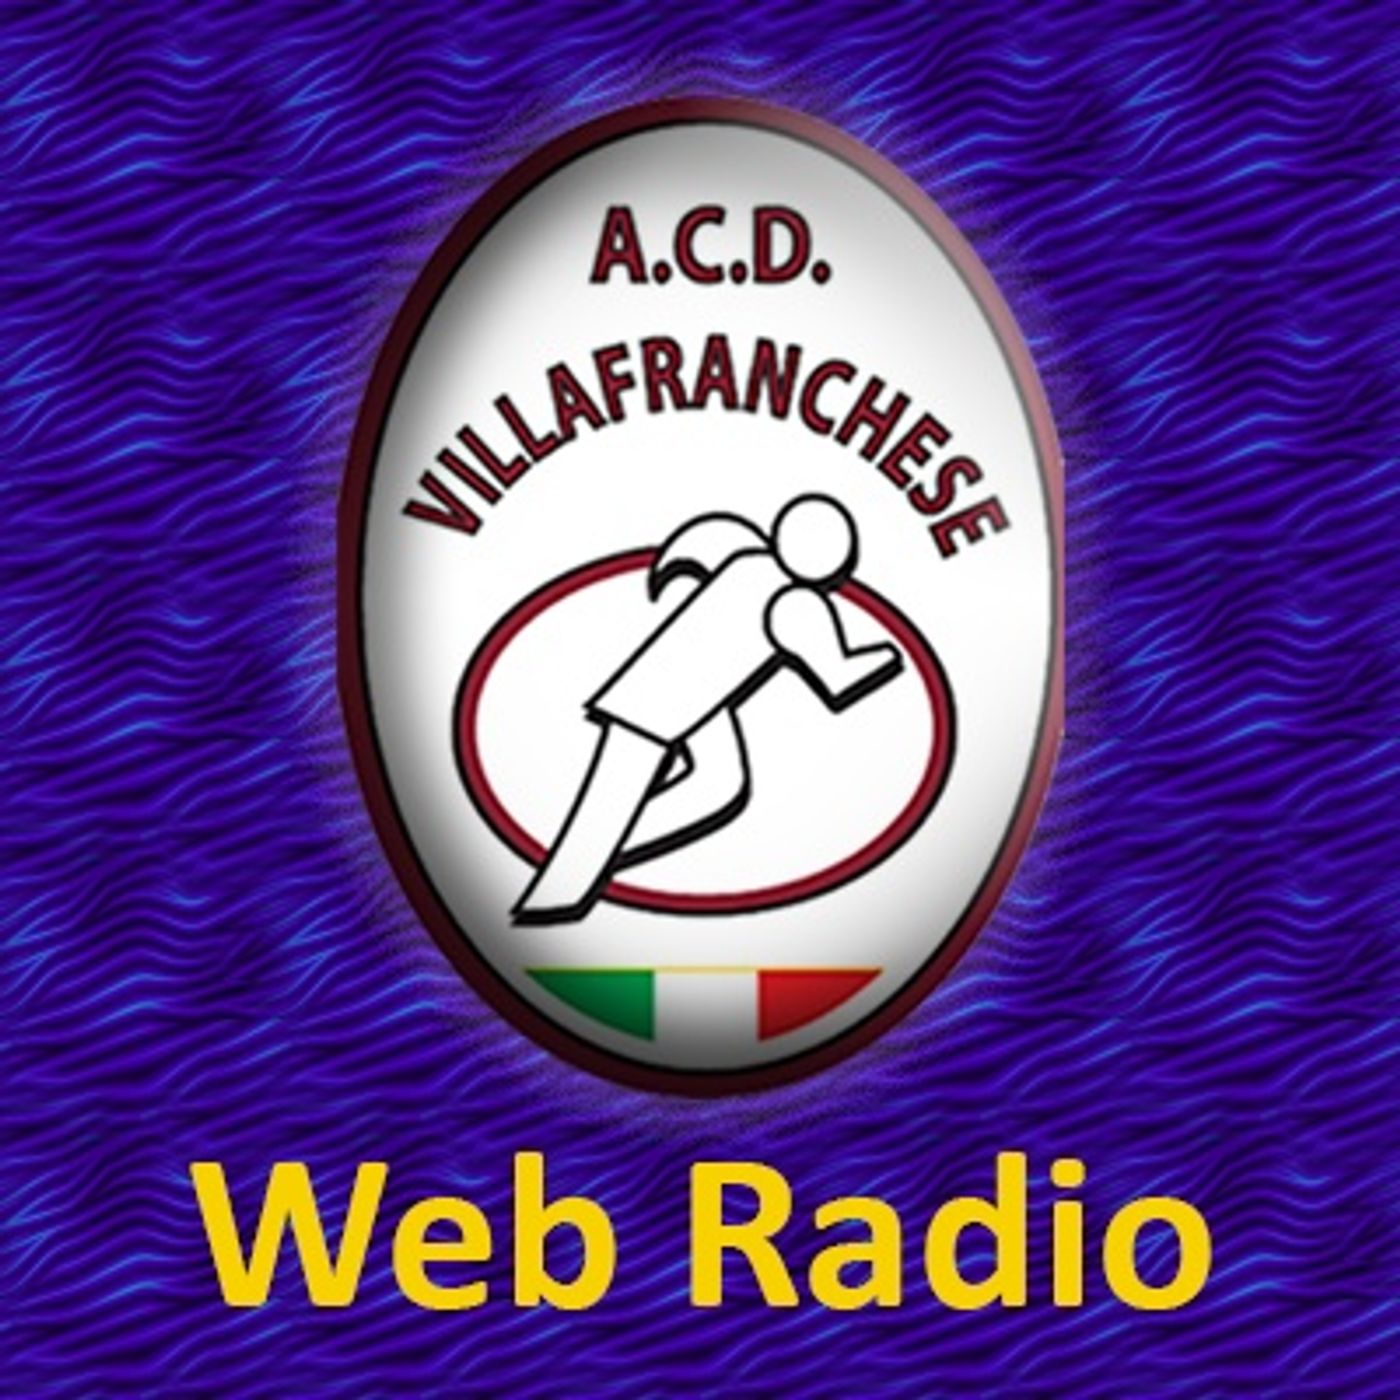 Villafrachese WEB-RADIO